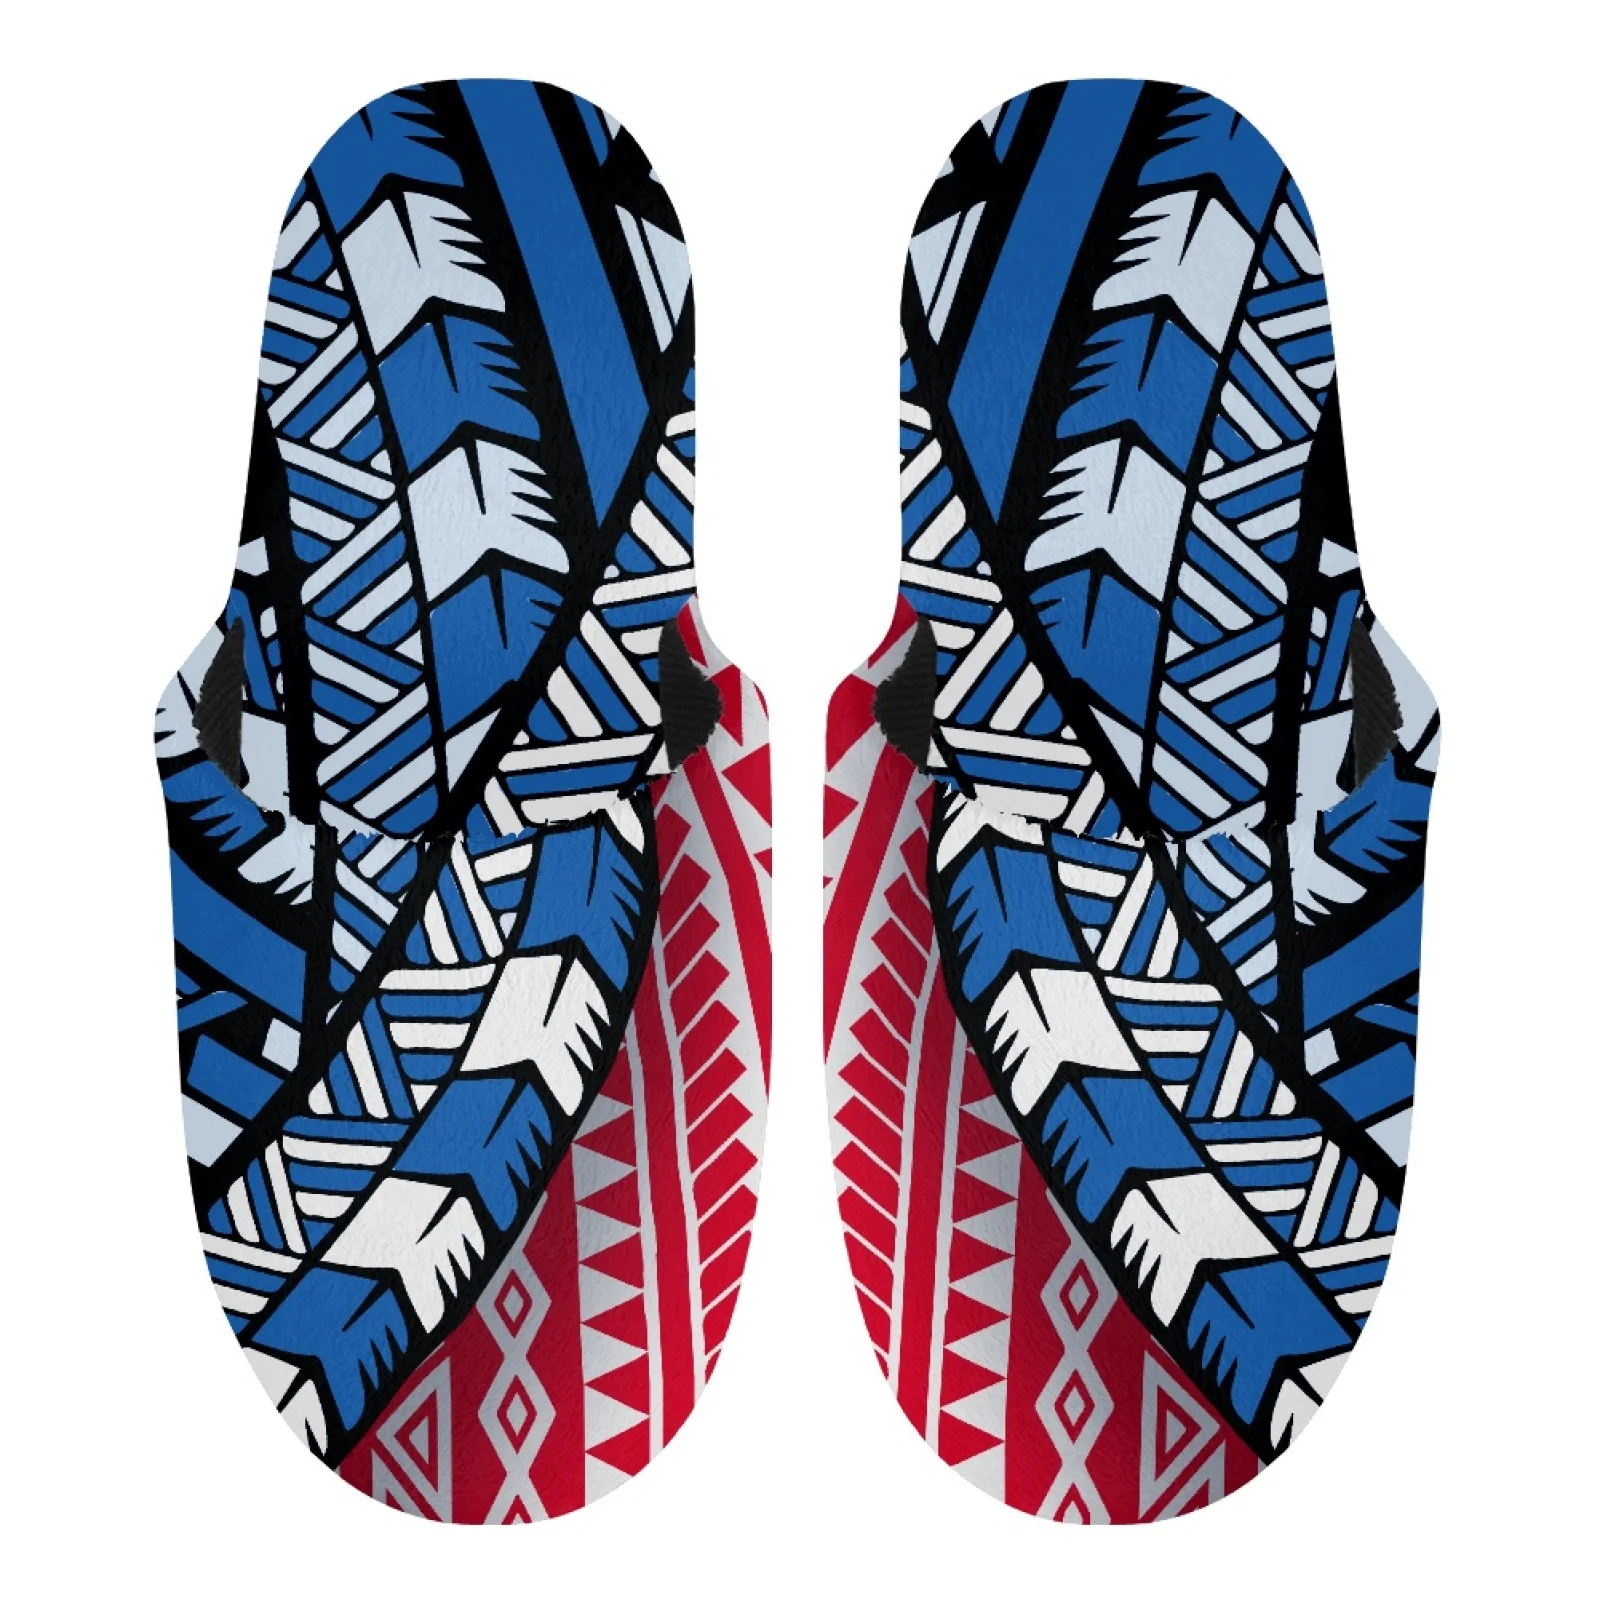 

Полинезийские племенные самоанские тапочки с татуировками, Самоа, принты, домашние плюшевые мягкие хлопковые тапочки красного и синего цвета, Нескользящие домашние тапочки с резиновой подошвой